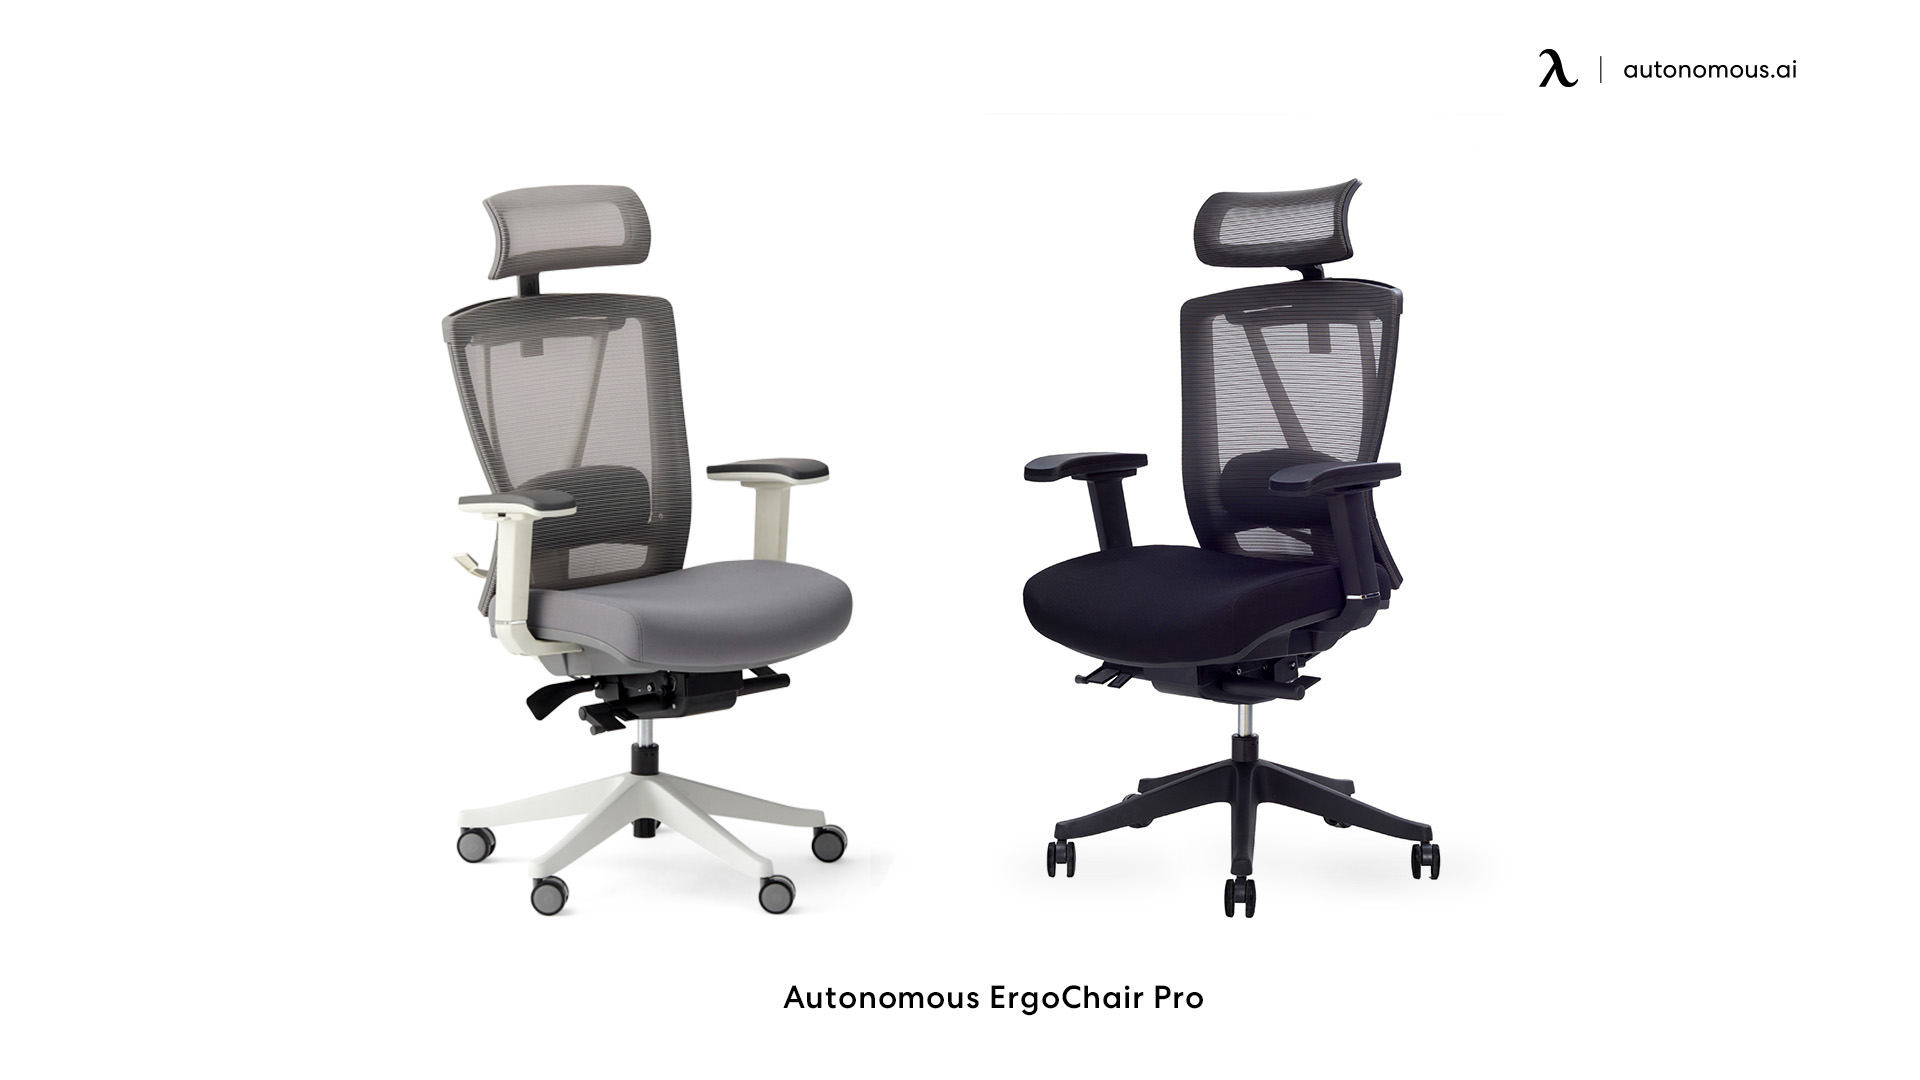 ErgoChair Pro tall office chair for standing desk